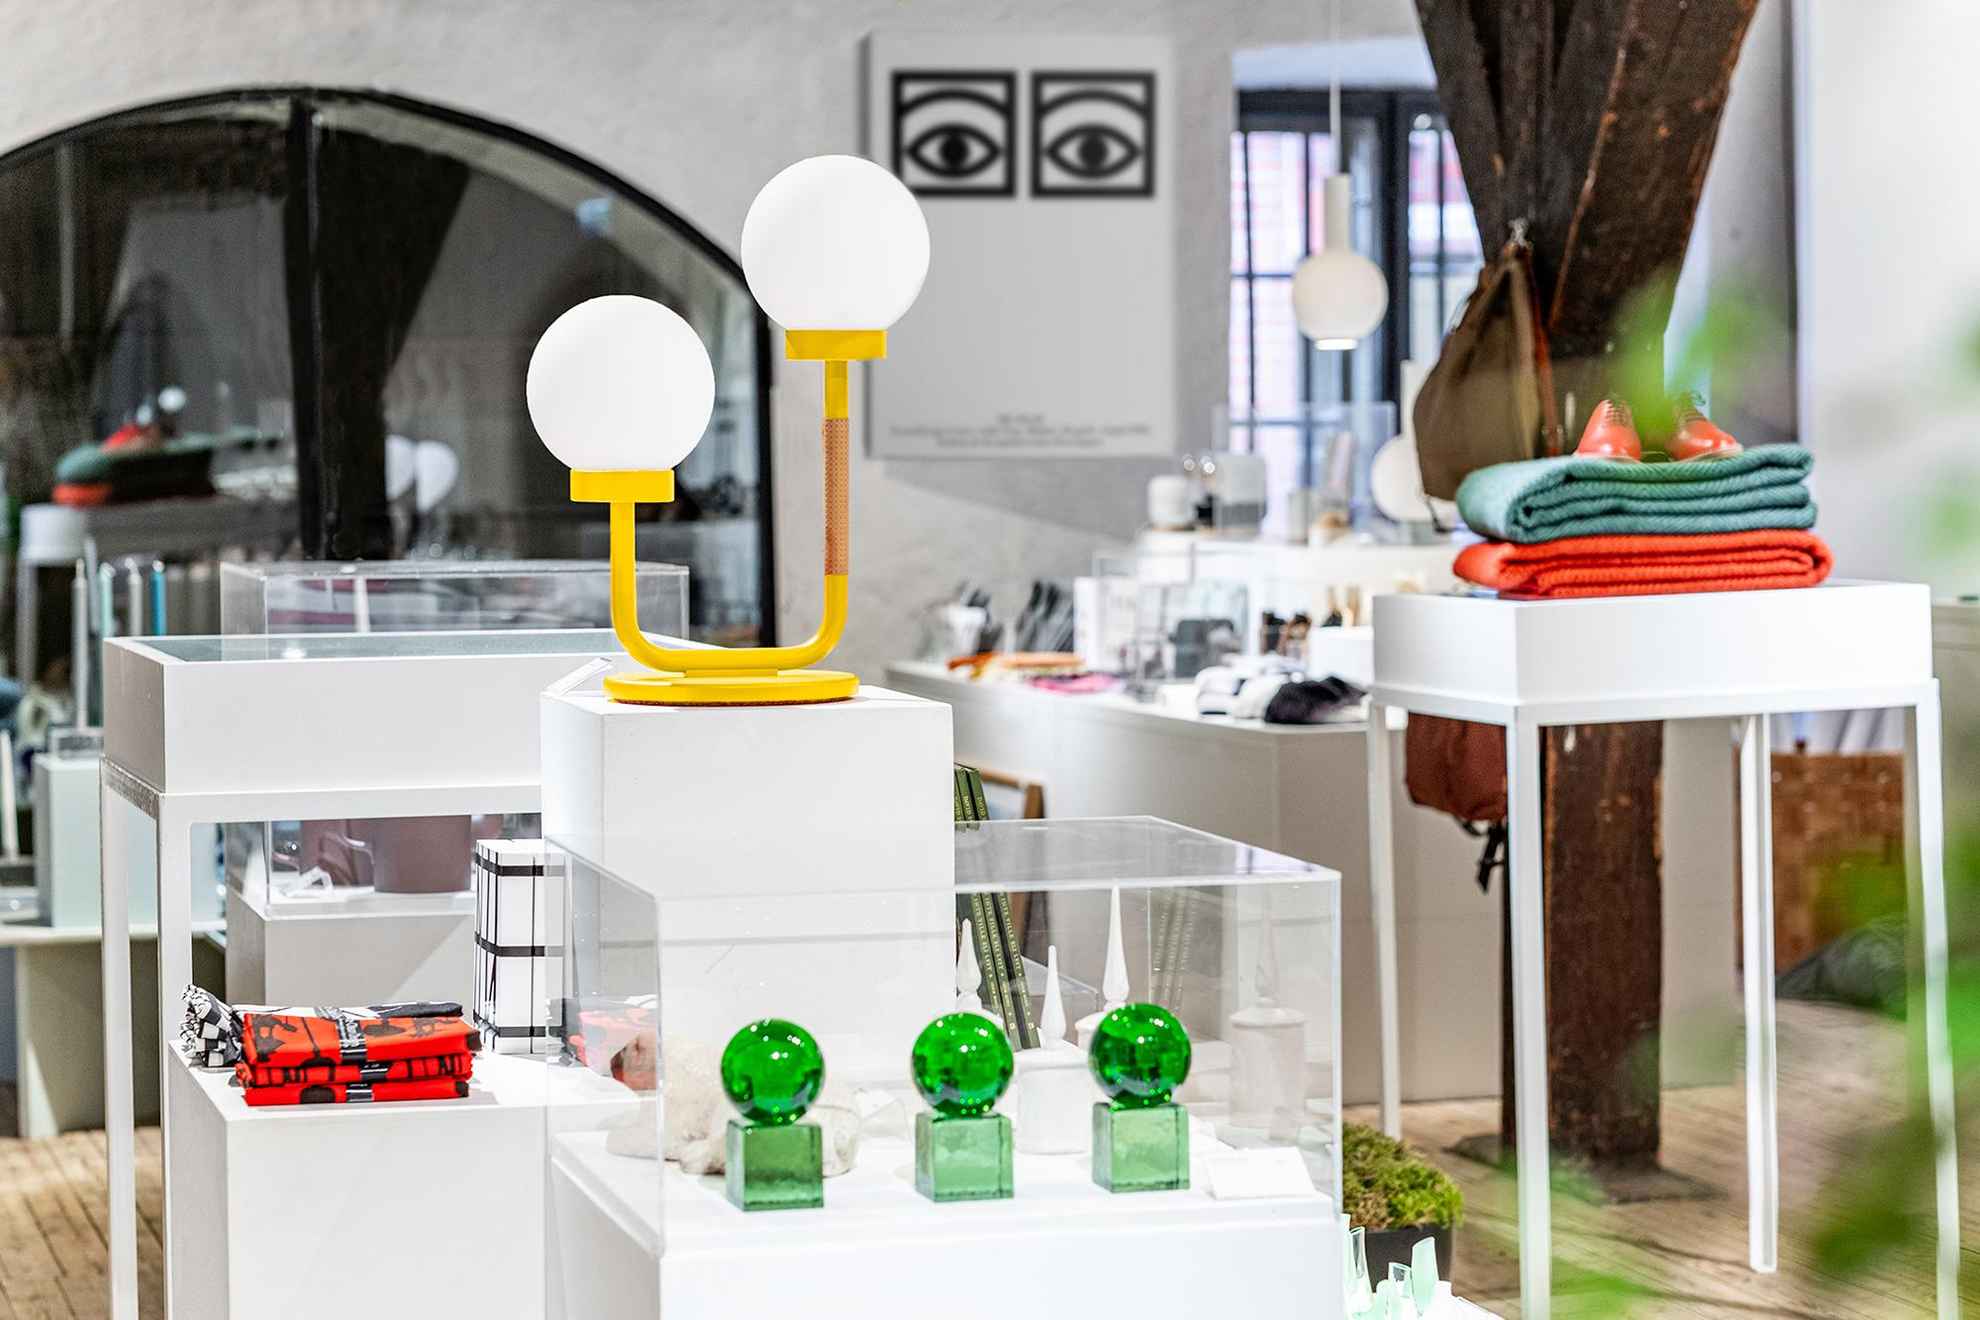 Der Shop des Form/Design Zentrums. Viele ausgestellte Designobjekte, wie Lampen, Glaskunst und andere Gegenstände.